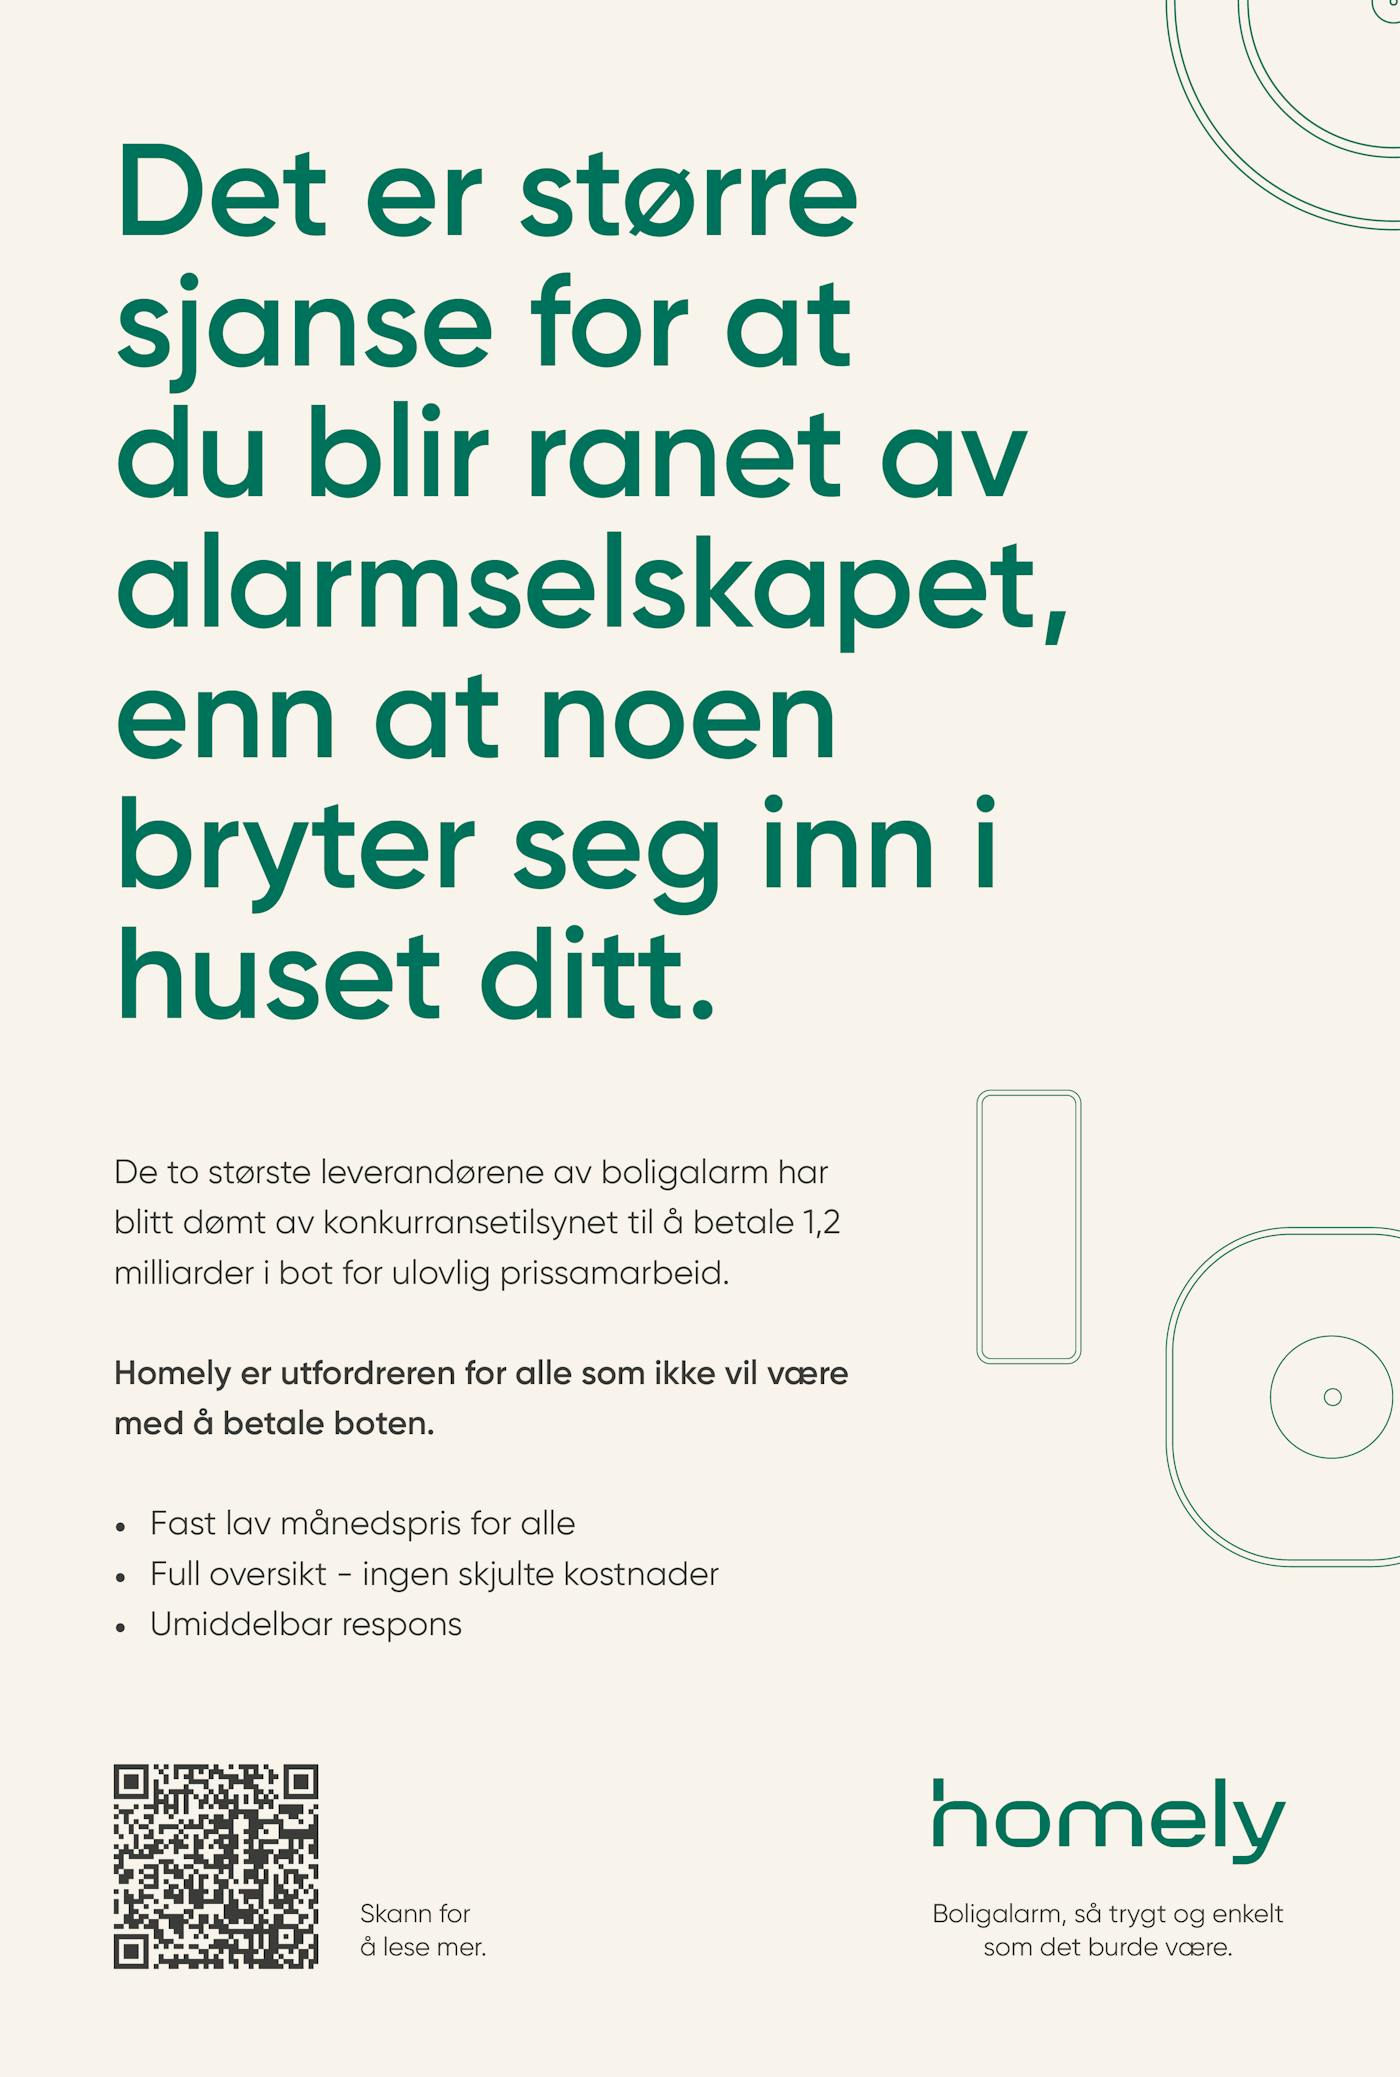 Homely Print Aftenposten 246x3653